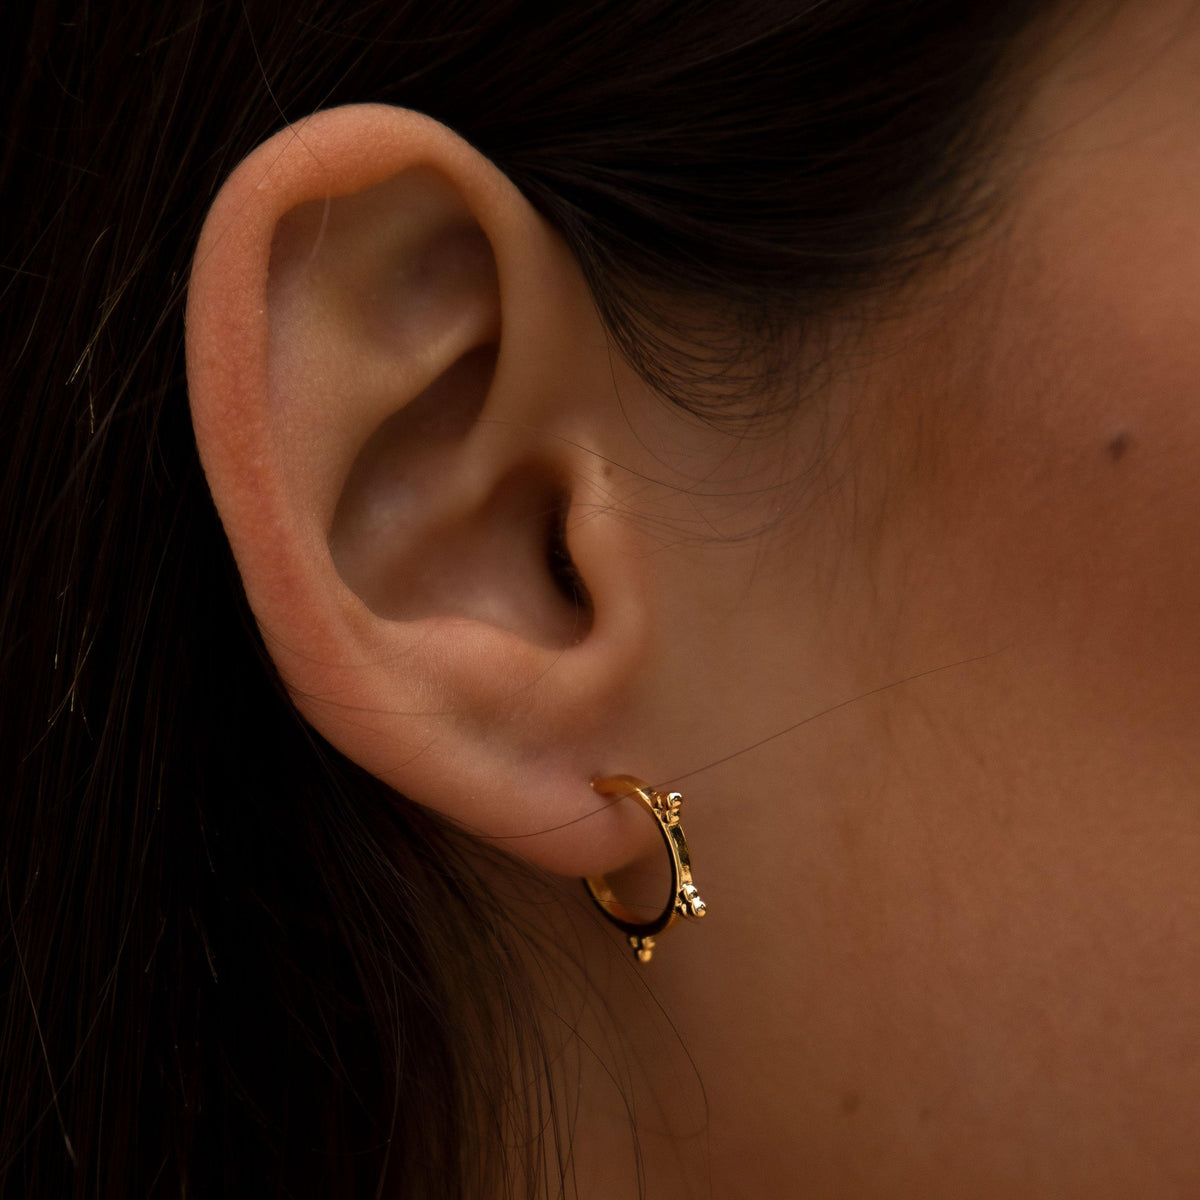 BOHOMOON Stainless Steel Francesca Hoop Earrings Gold